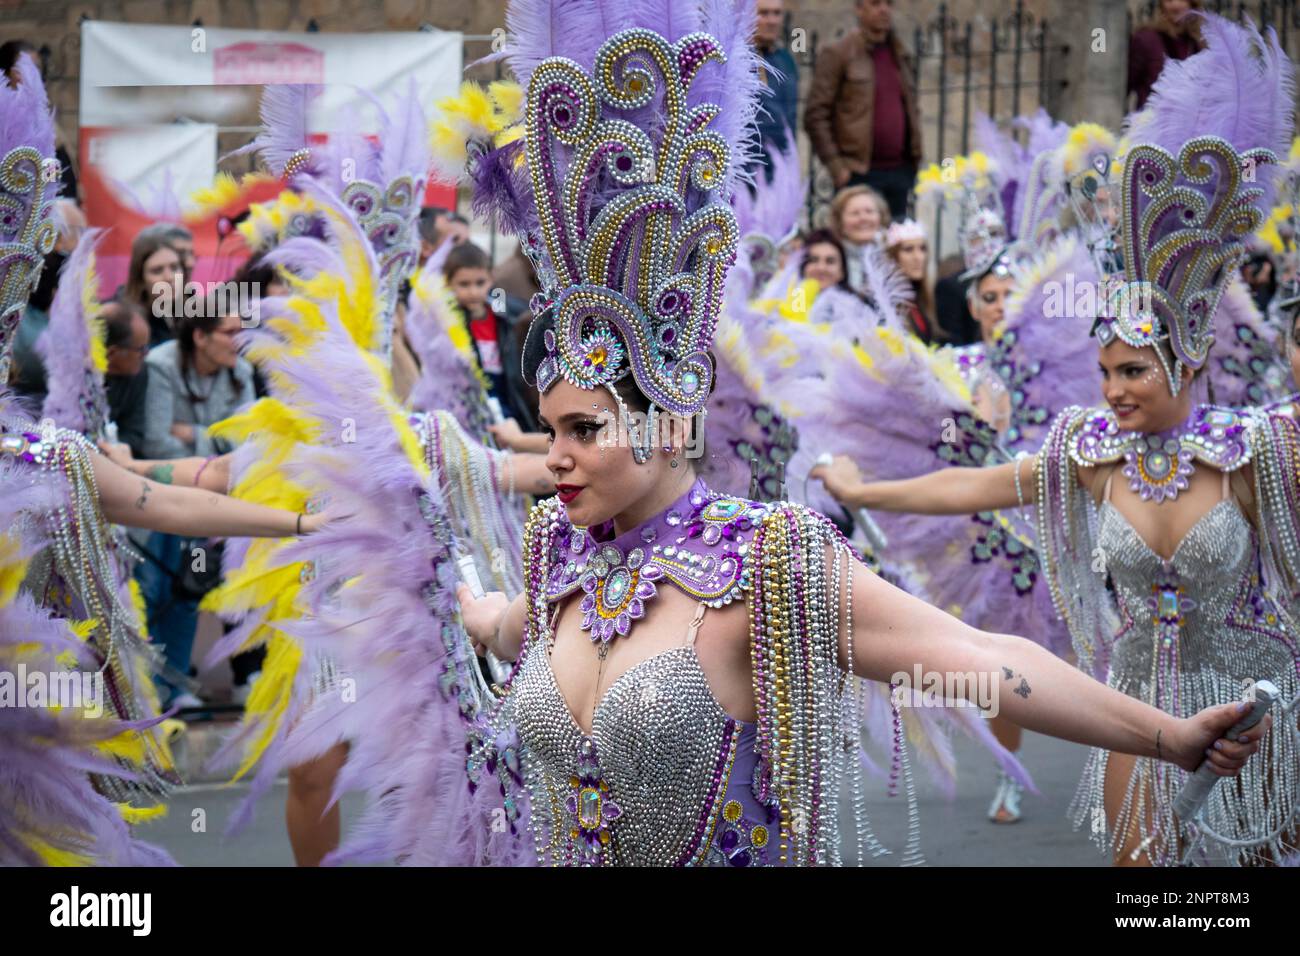 Gente feliz desfilando y bailando, con disfraces abstractos y coloridos en el desfile de Carnaval de Navalmoral de la Mata, España Stock Photo